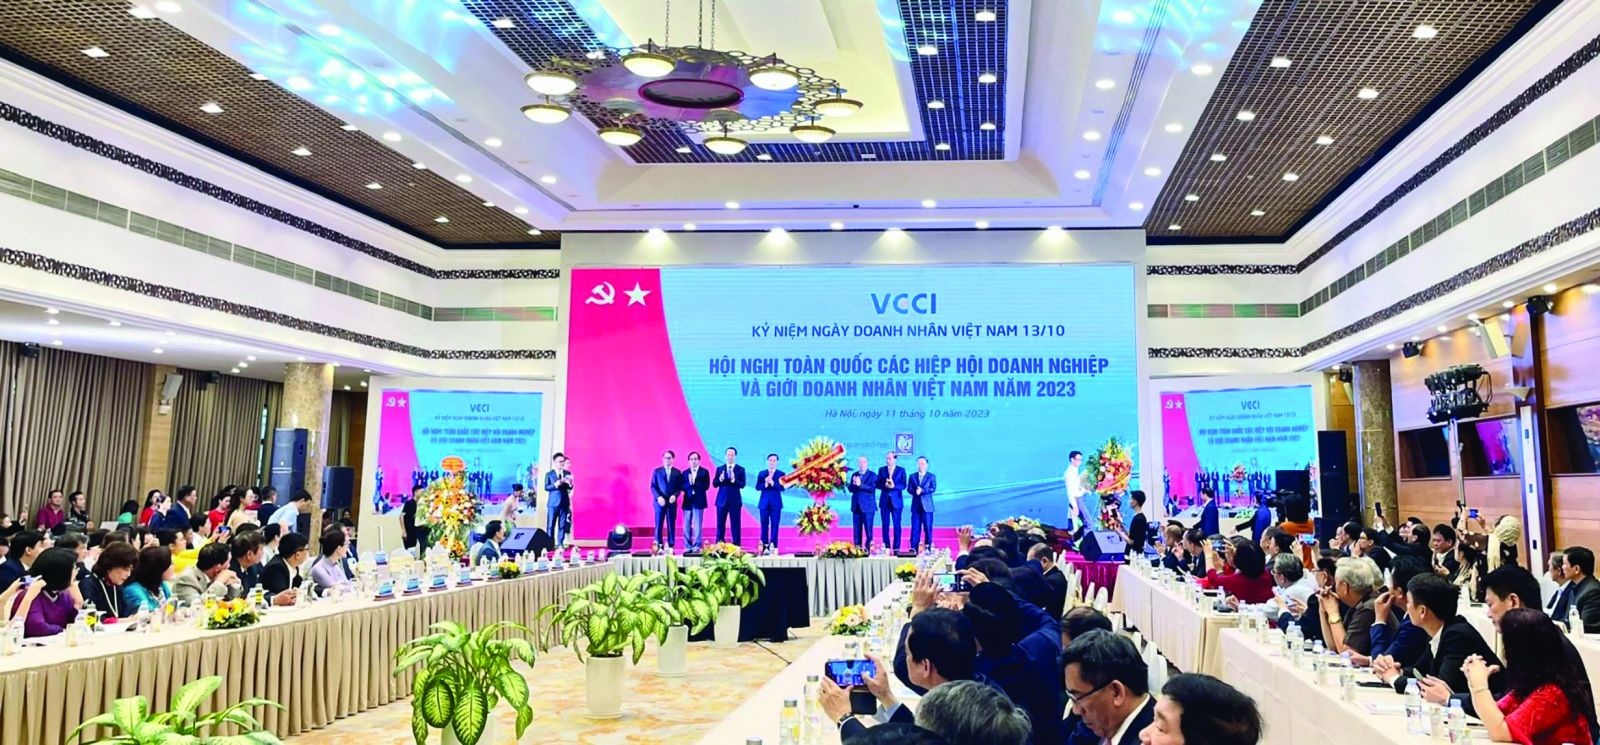  Hội nghị toàn quốc các Hiệp hội Doanh nghiệp và giới doanh nhân Việt Nam.